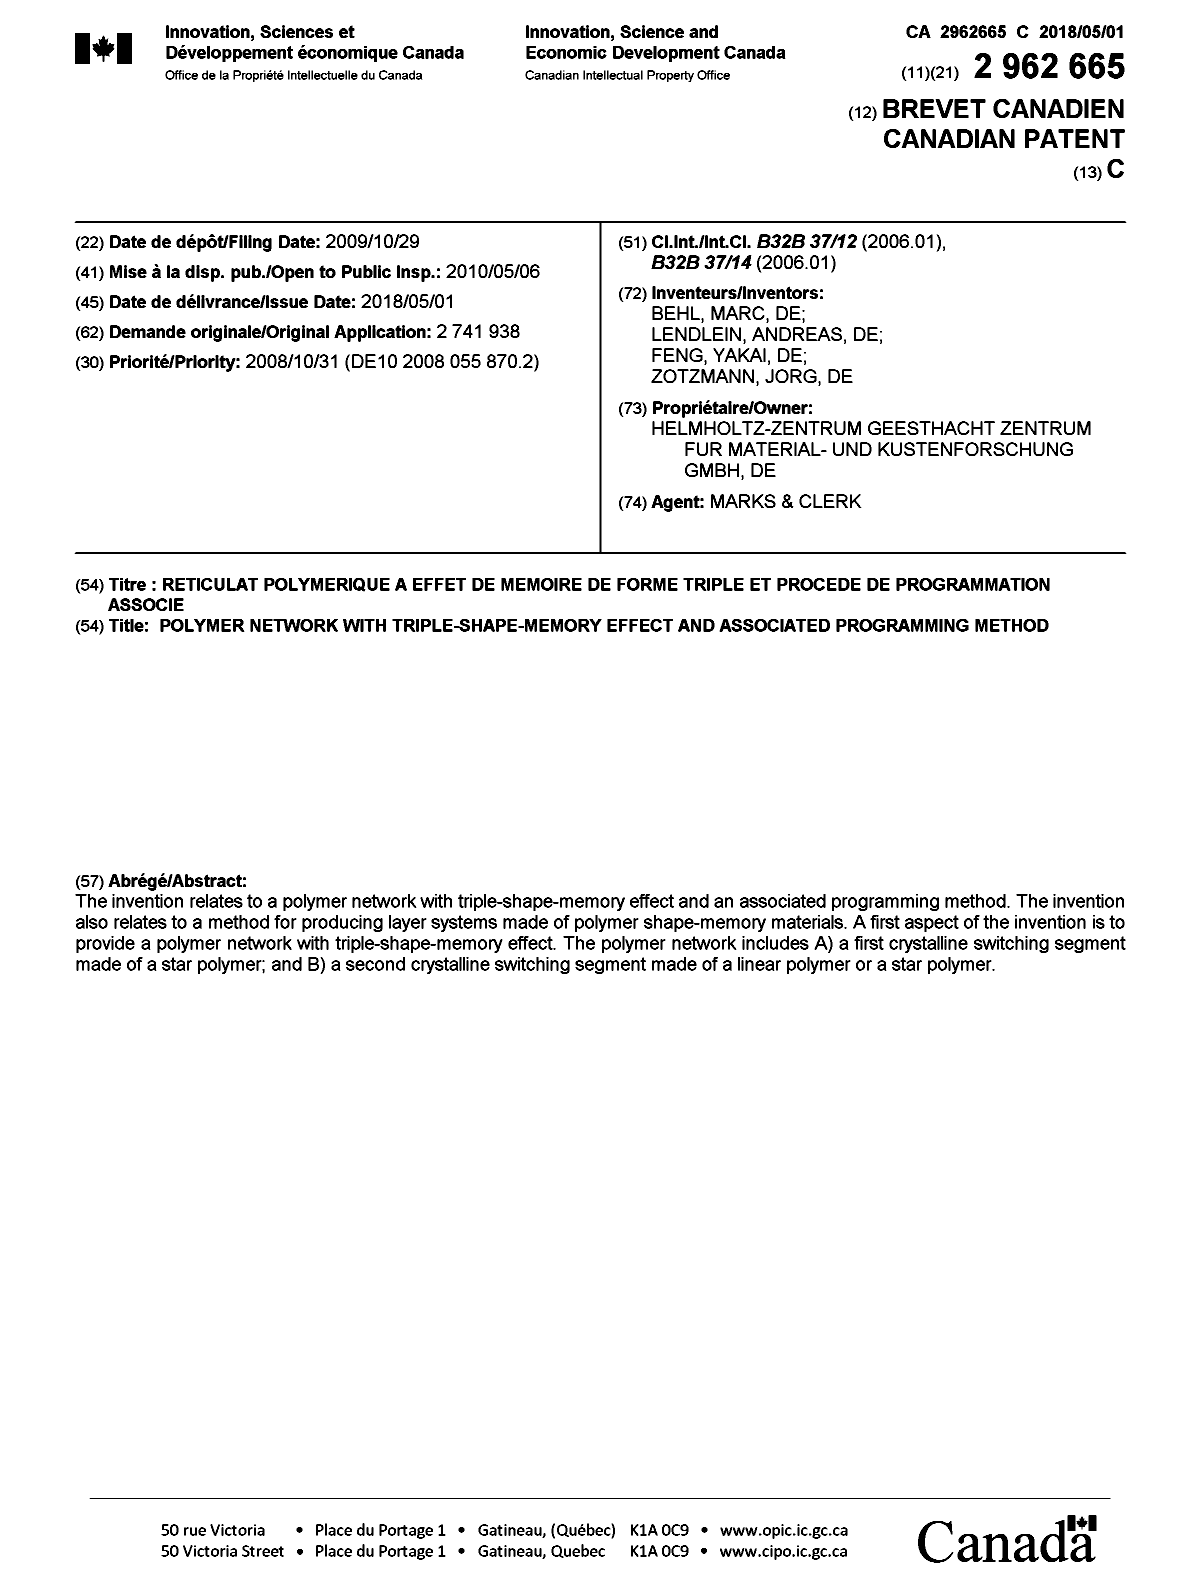 Document de brevet canadien 2962665. Page couverture 20180403. Image 1 de 1